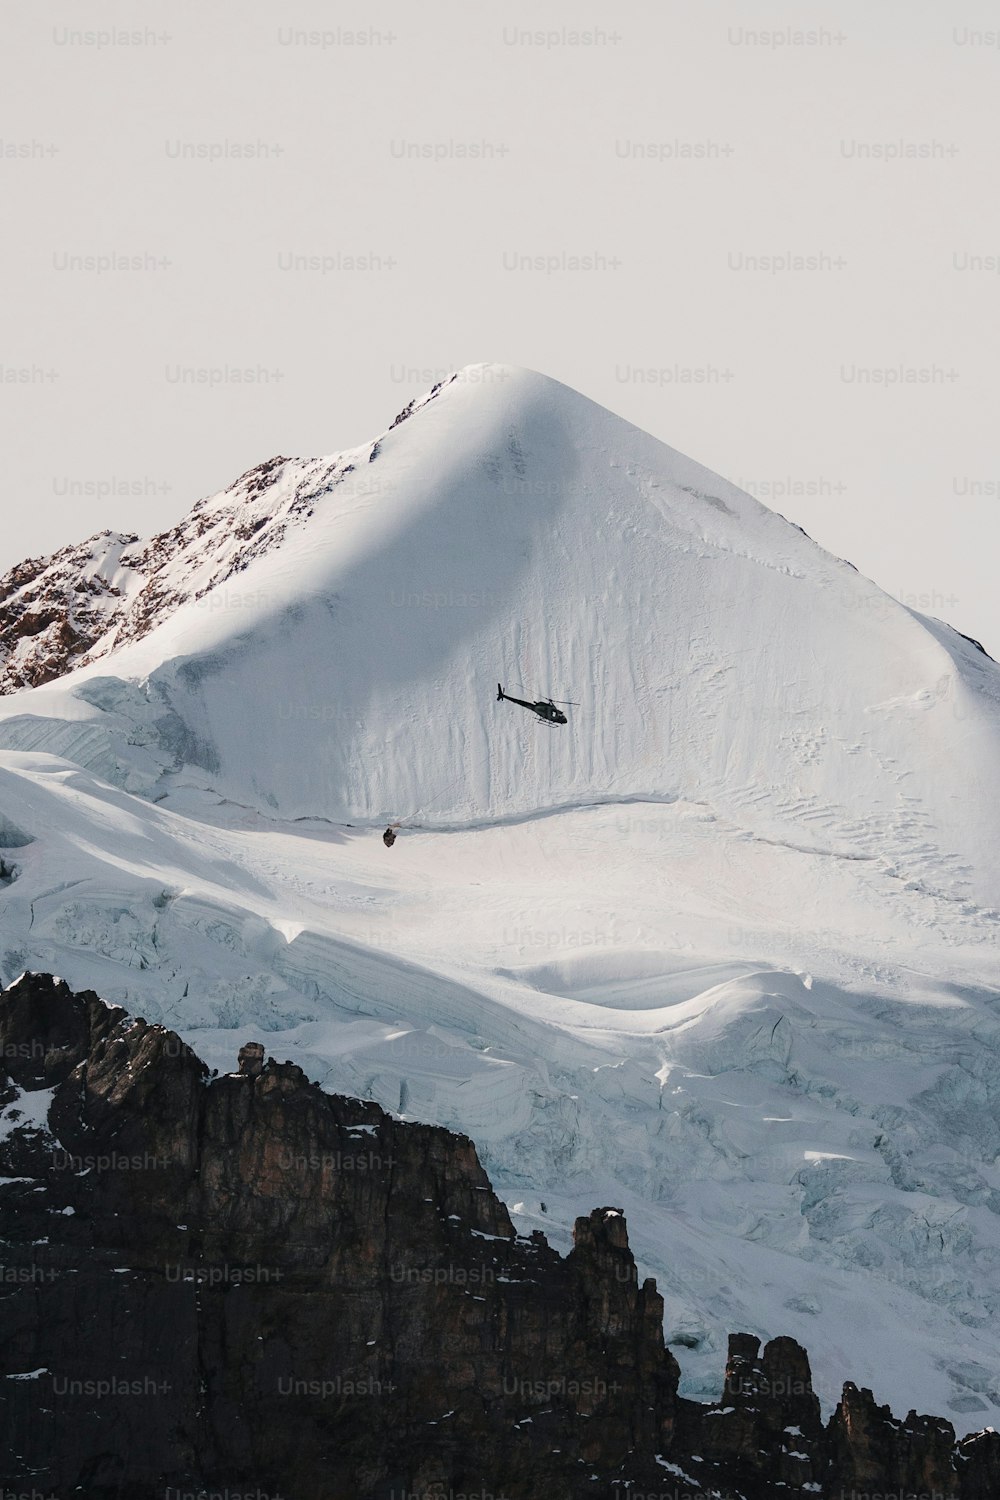 スノーボーダーが雪山から飛び降りる